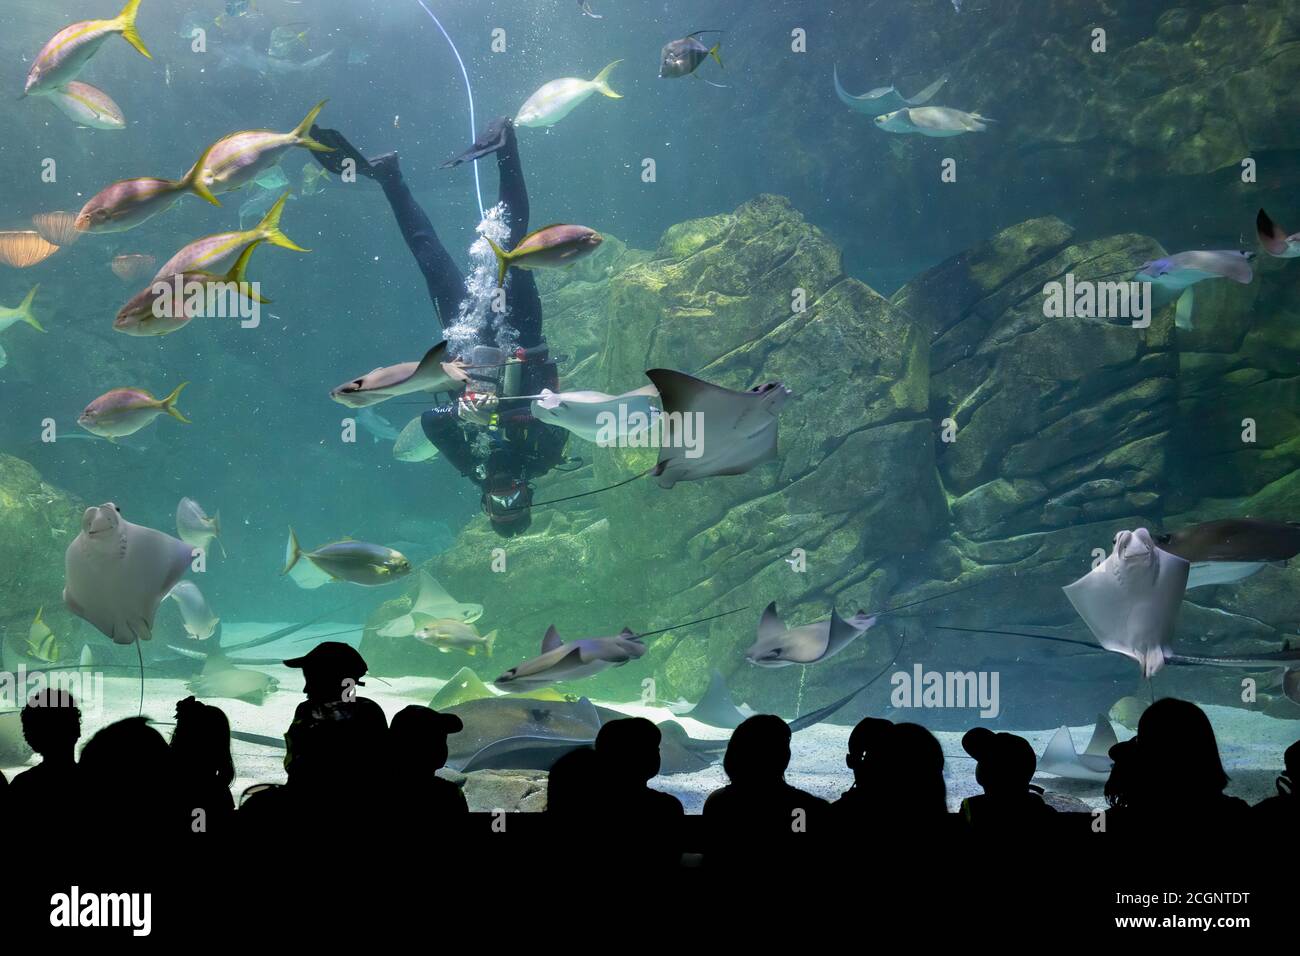 Toronto, Canada - Agosto 20 2018: Turisti silhouetted che guardano un subacqueo durante uno spettacolo acquatico al Ripley's Aquarium, Toronto, Canada Foto Stock